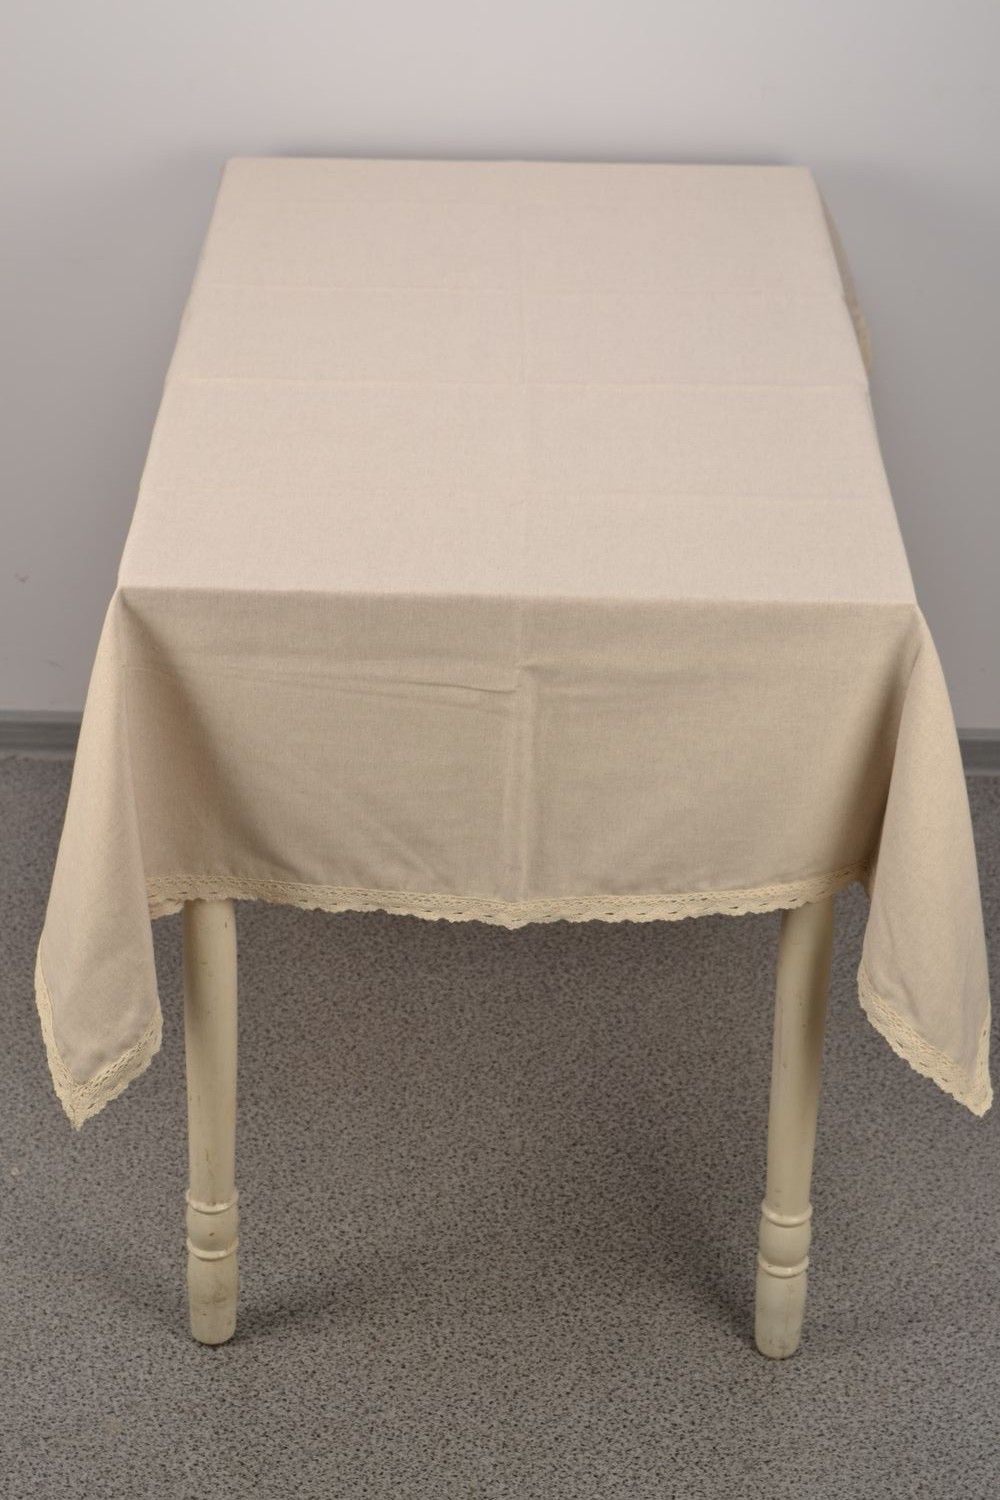 Mantel de mesa hecho a mano de algodón y poliamida de color gris foto 3